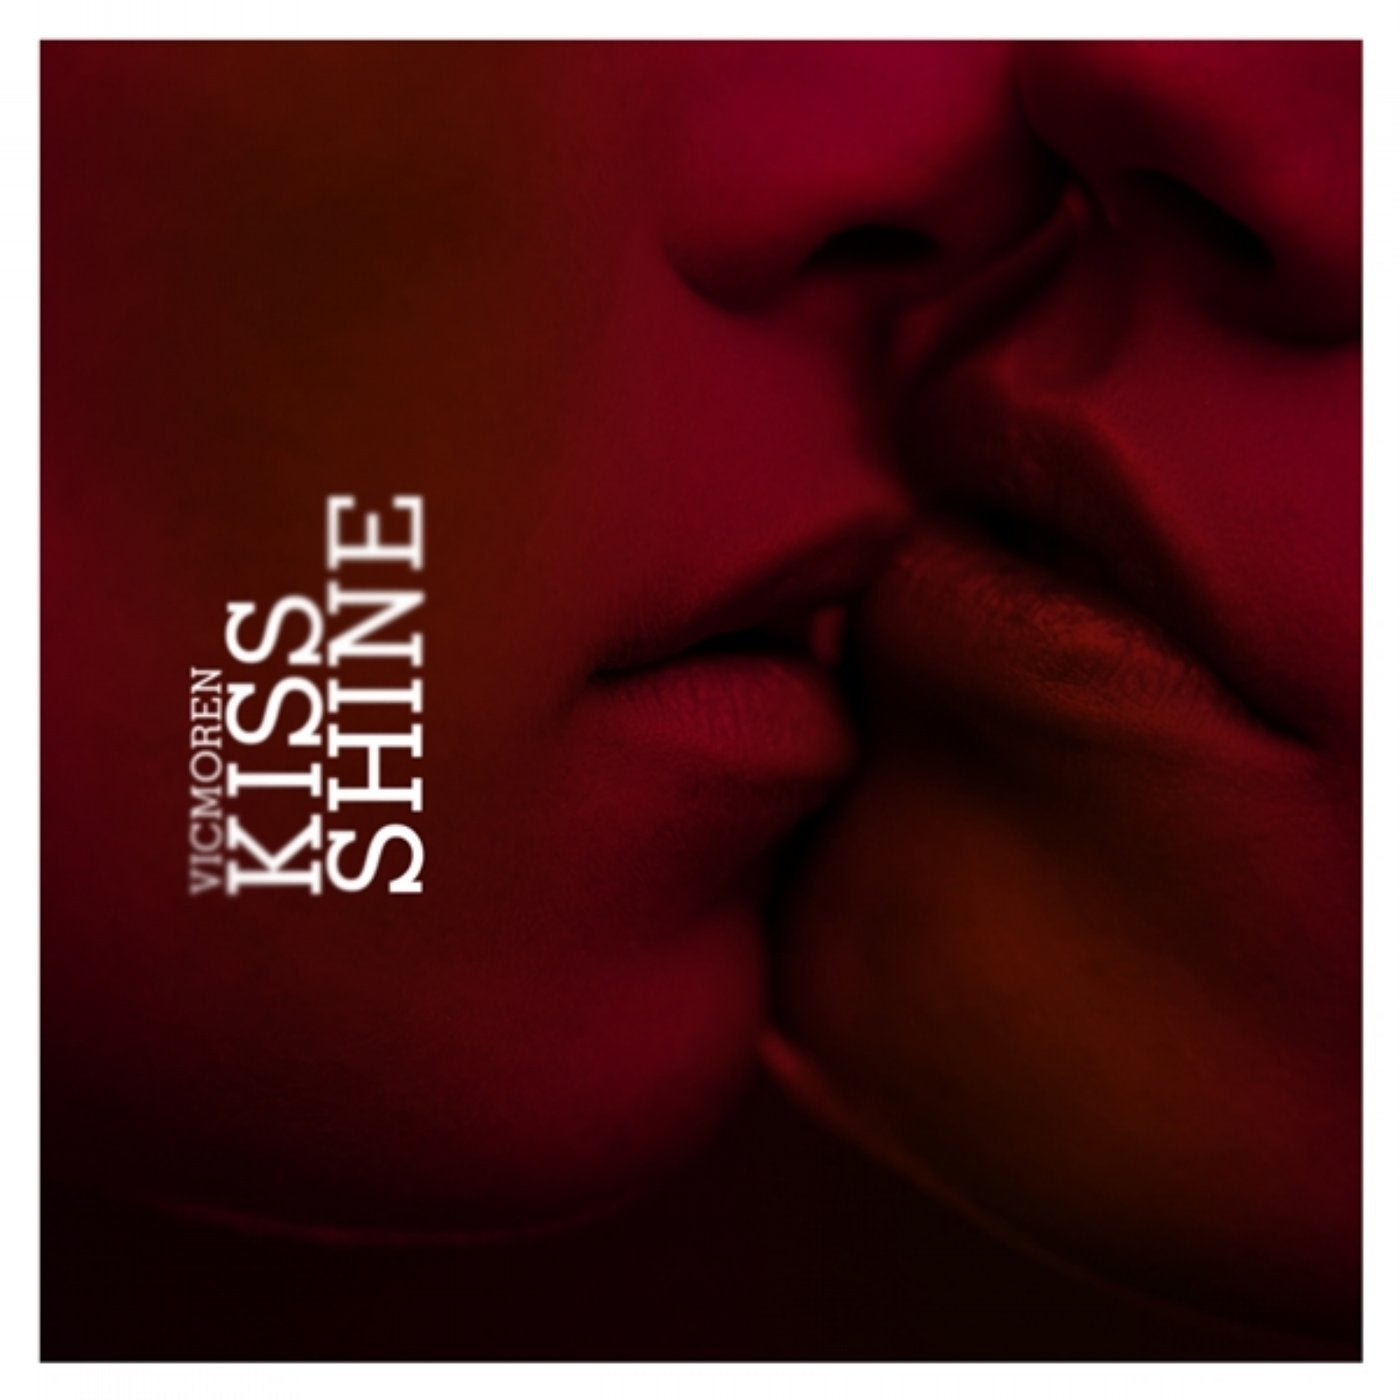 Kissing песня слушать. Альбом с поцелуями. Обложка альбома с поцелуем. Kiss альбомы. Поцелуй обложка для трека.